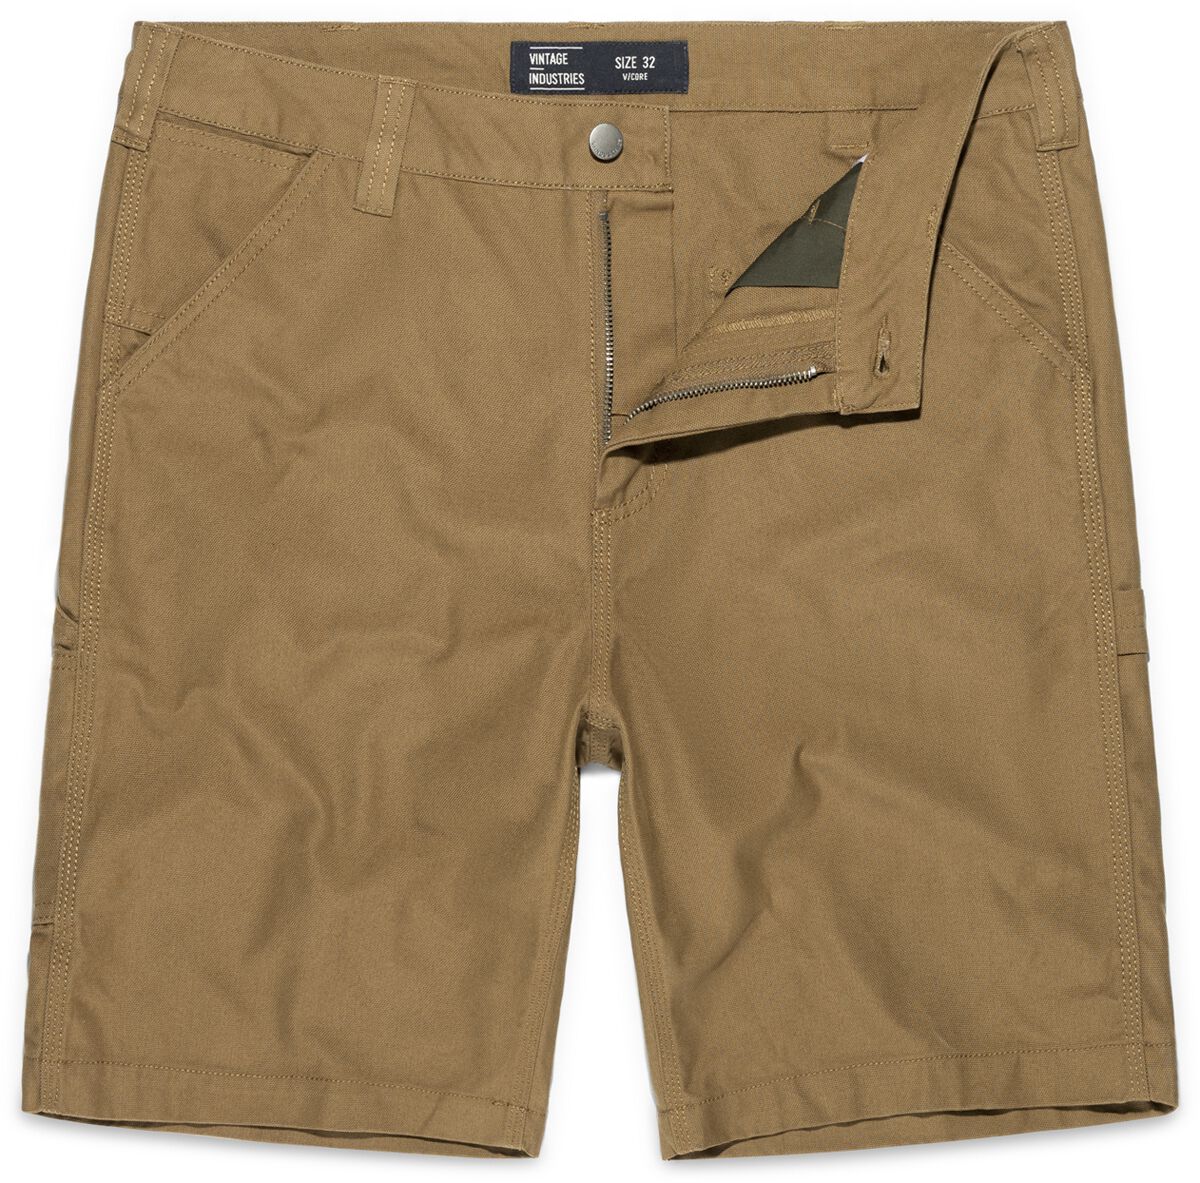 Vintage Industries Short - Dayton Shorts - 32 bis 38 - für Männer - Größe 38 - beige